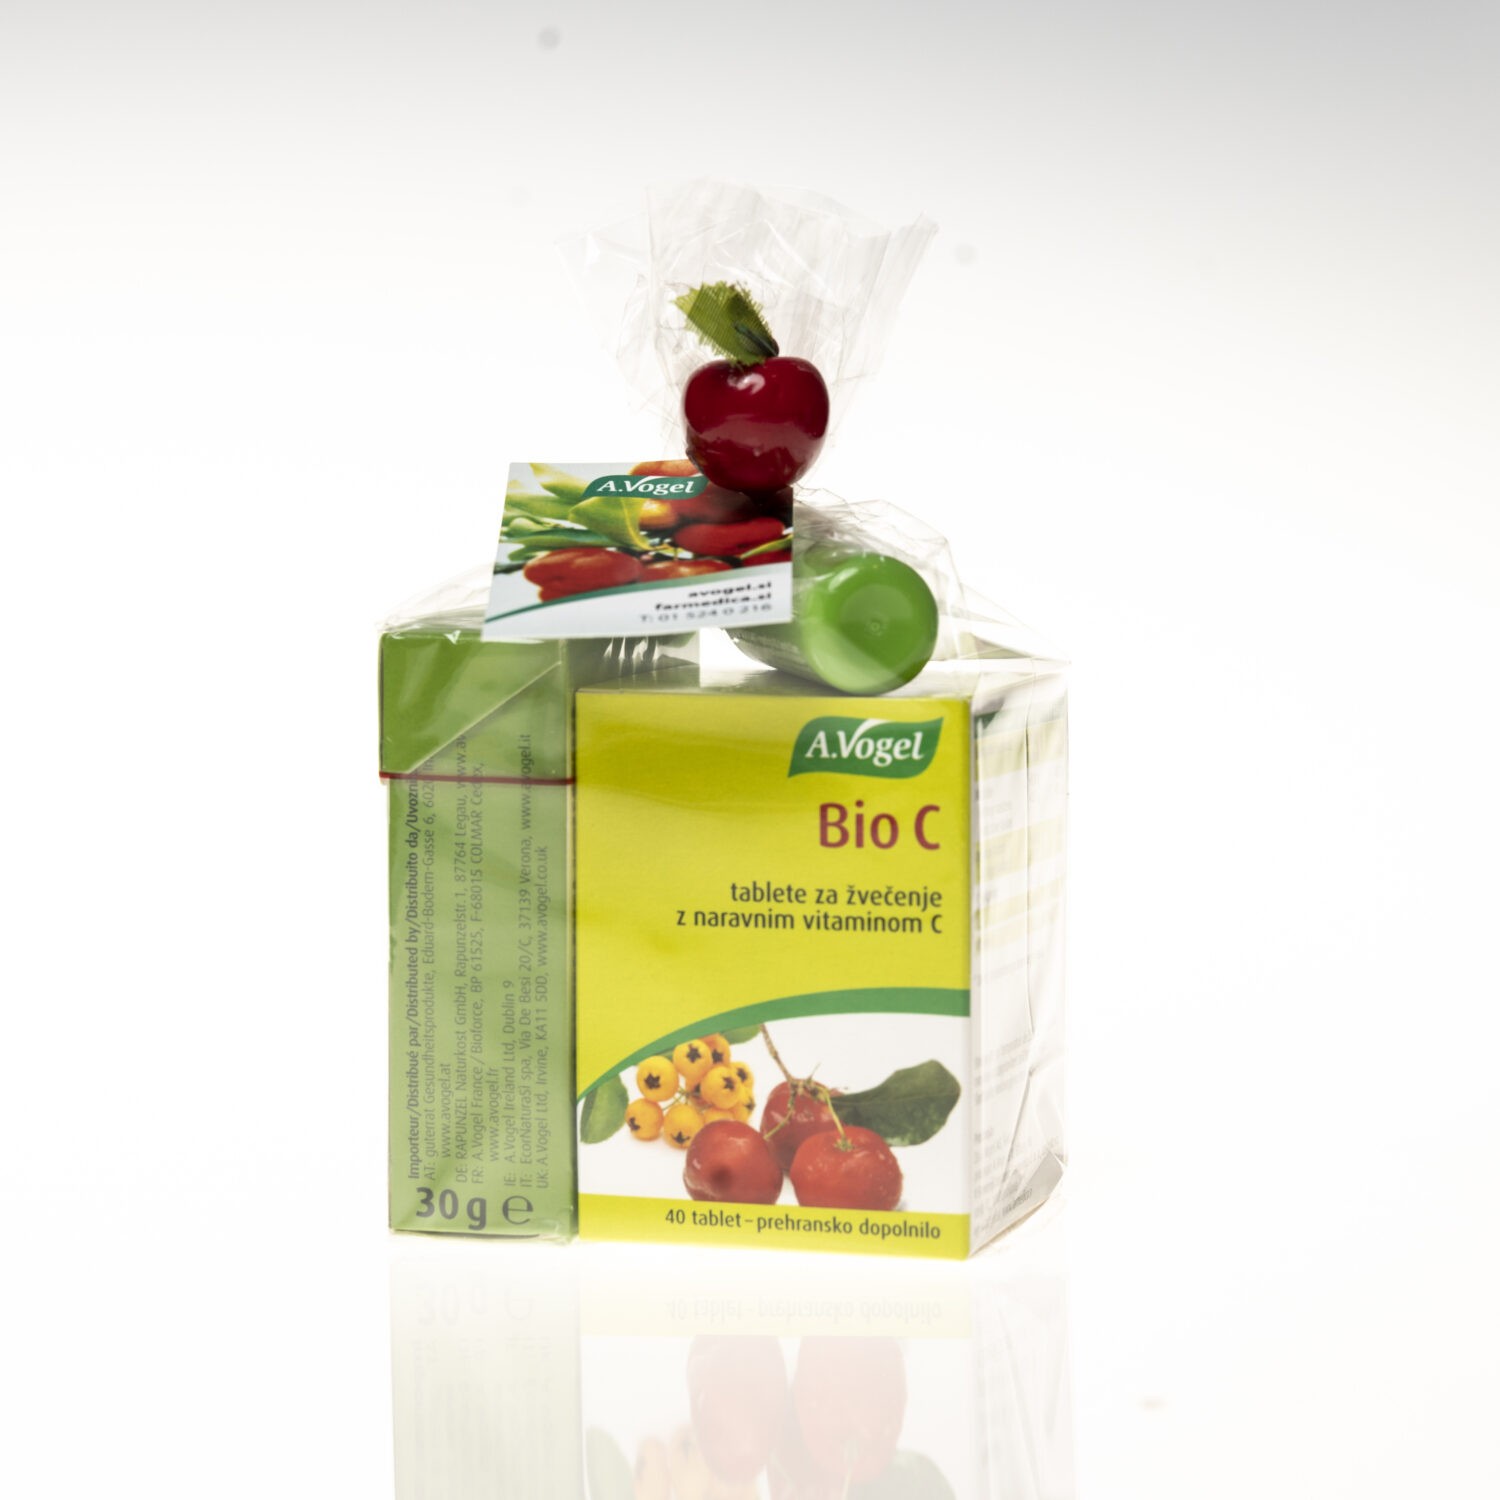 A. Vogel Bio C žvečljive tablete darilni paket + Santasapina bonboni + Balzam za ustnice